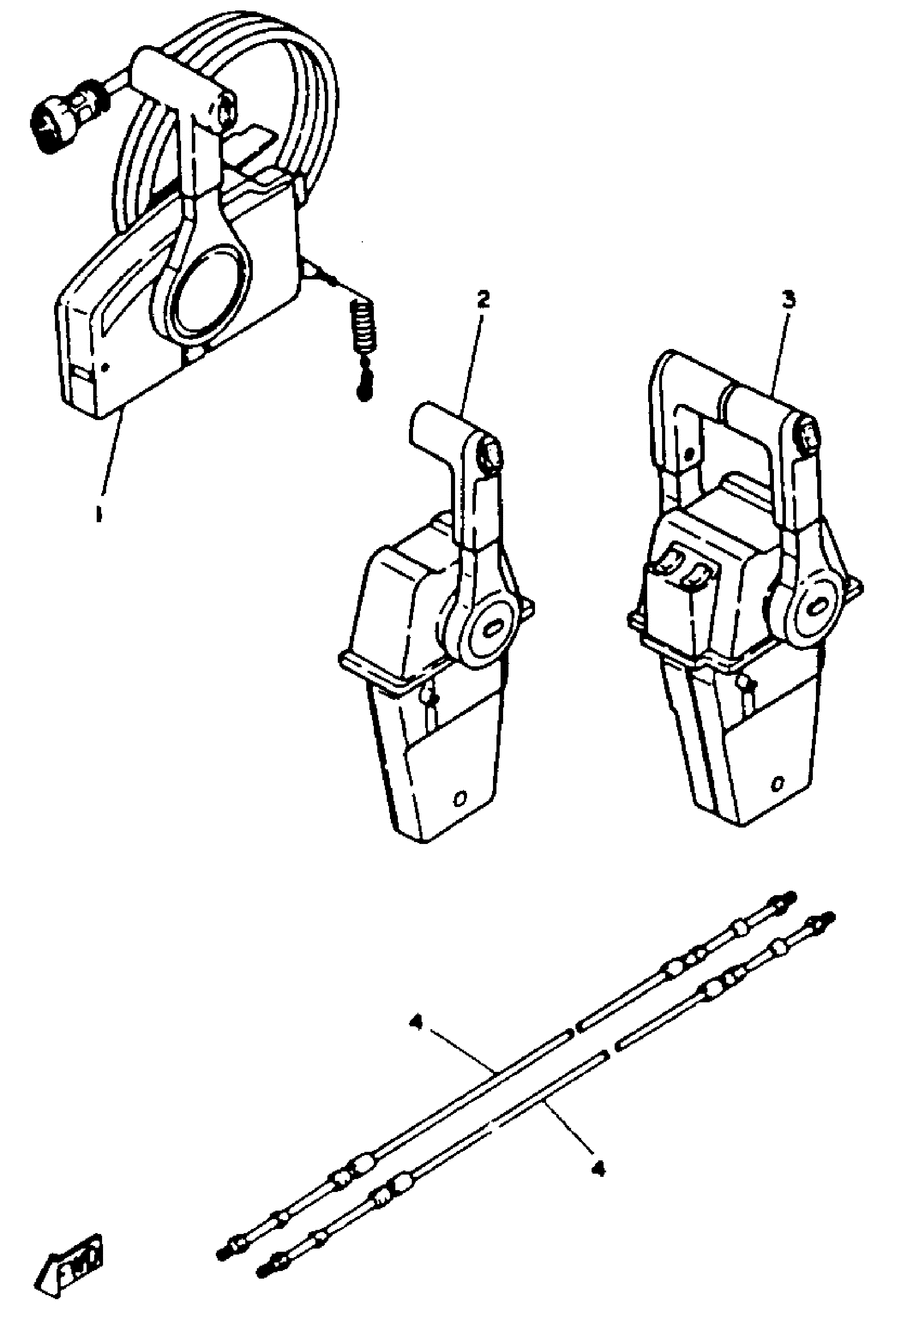 1993 L250TURR REMOTE CONTROL CABLES